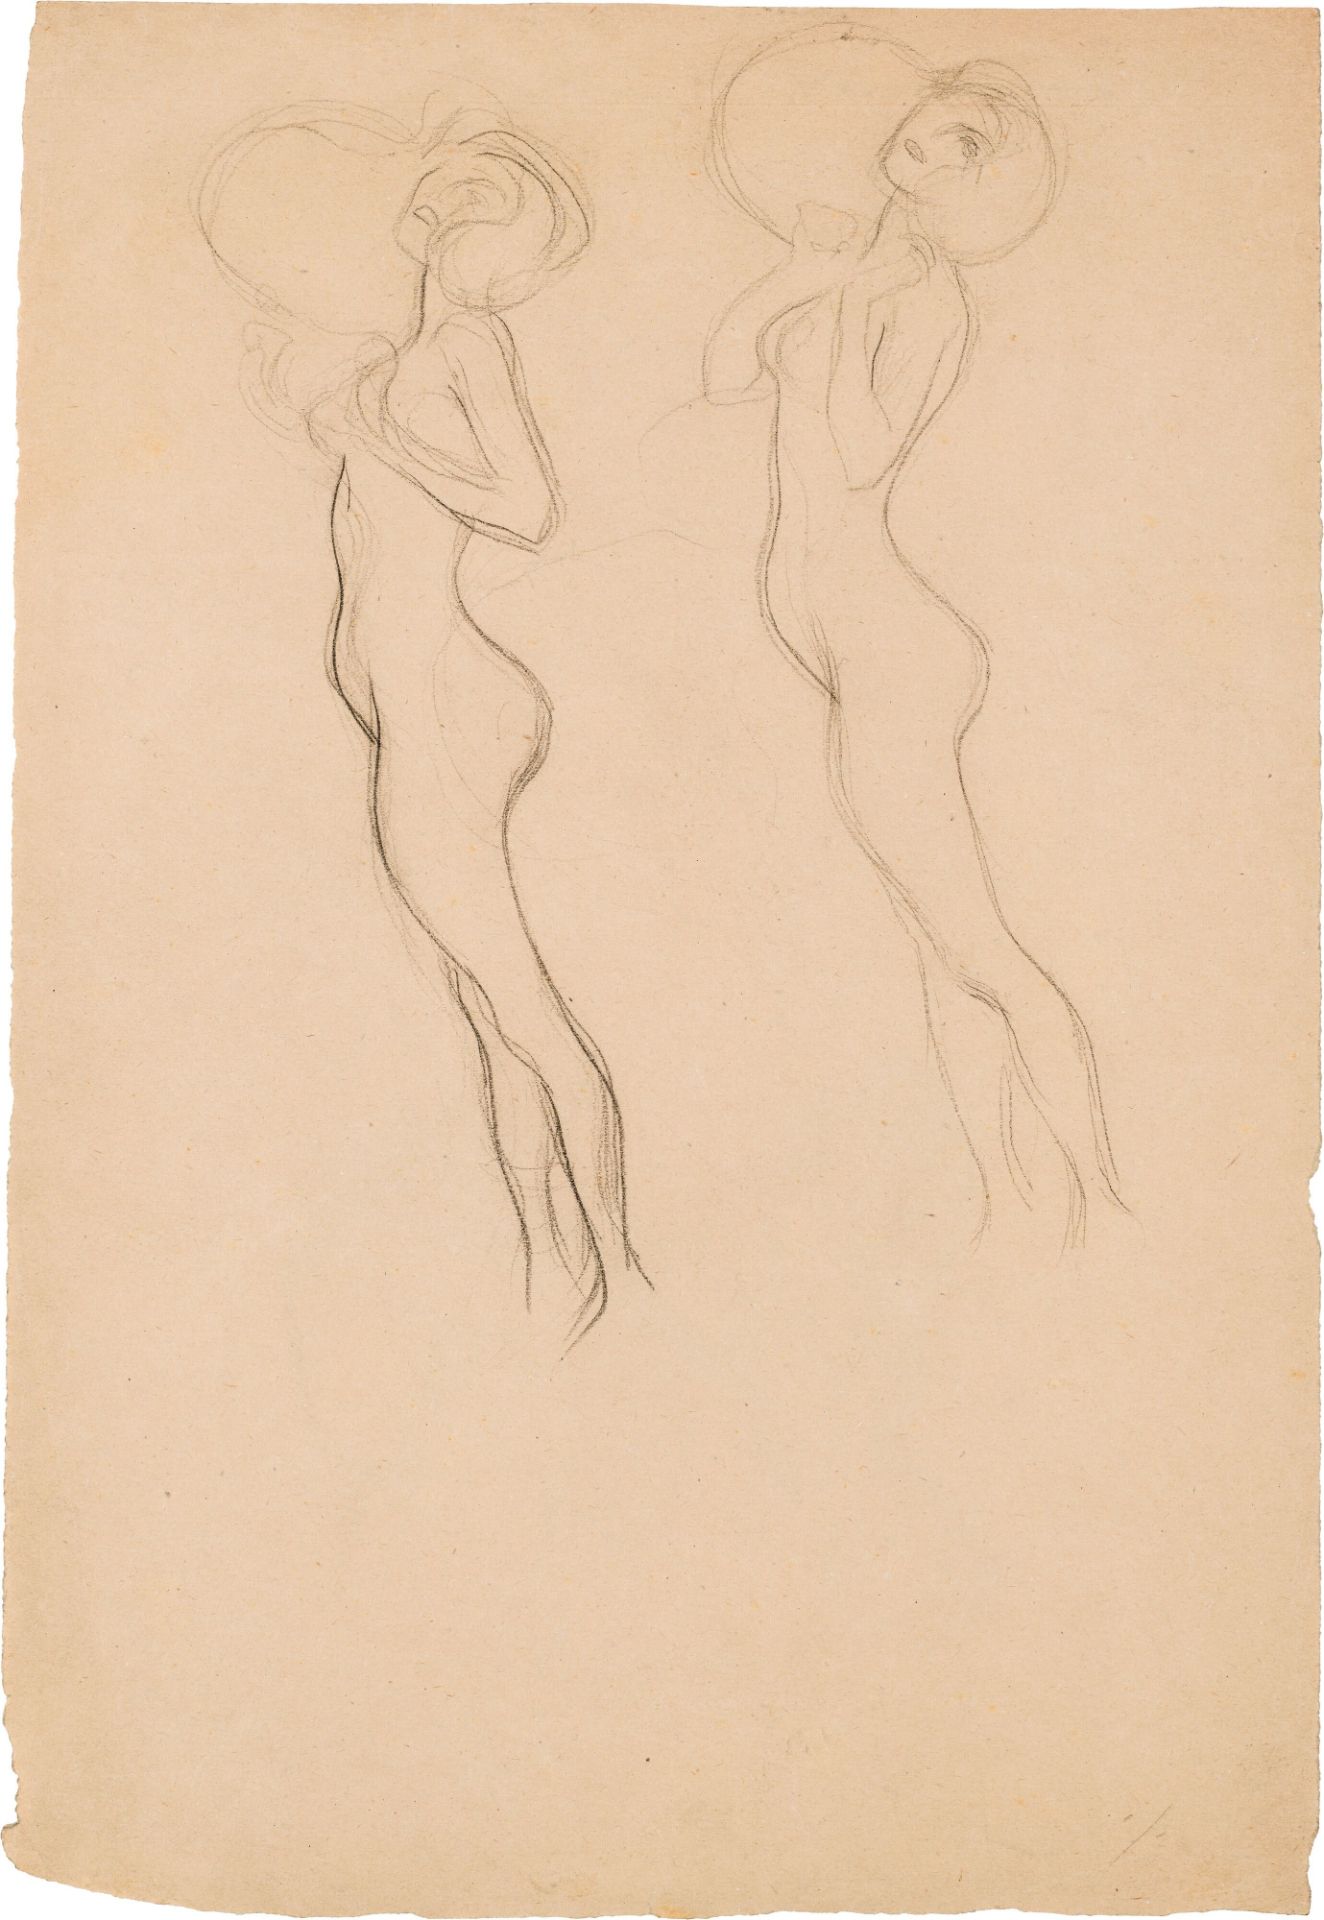 Gustav Klimt: Studie für "Irrlichter" (recto) und für "Hygieia" (verso)